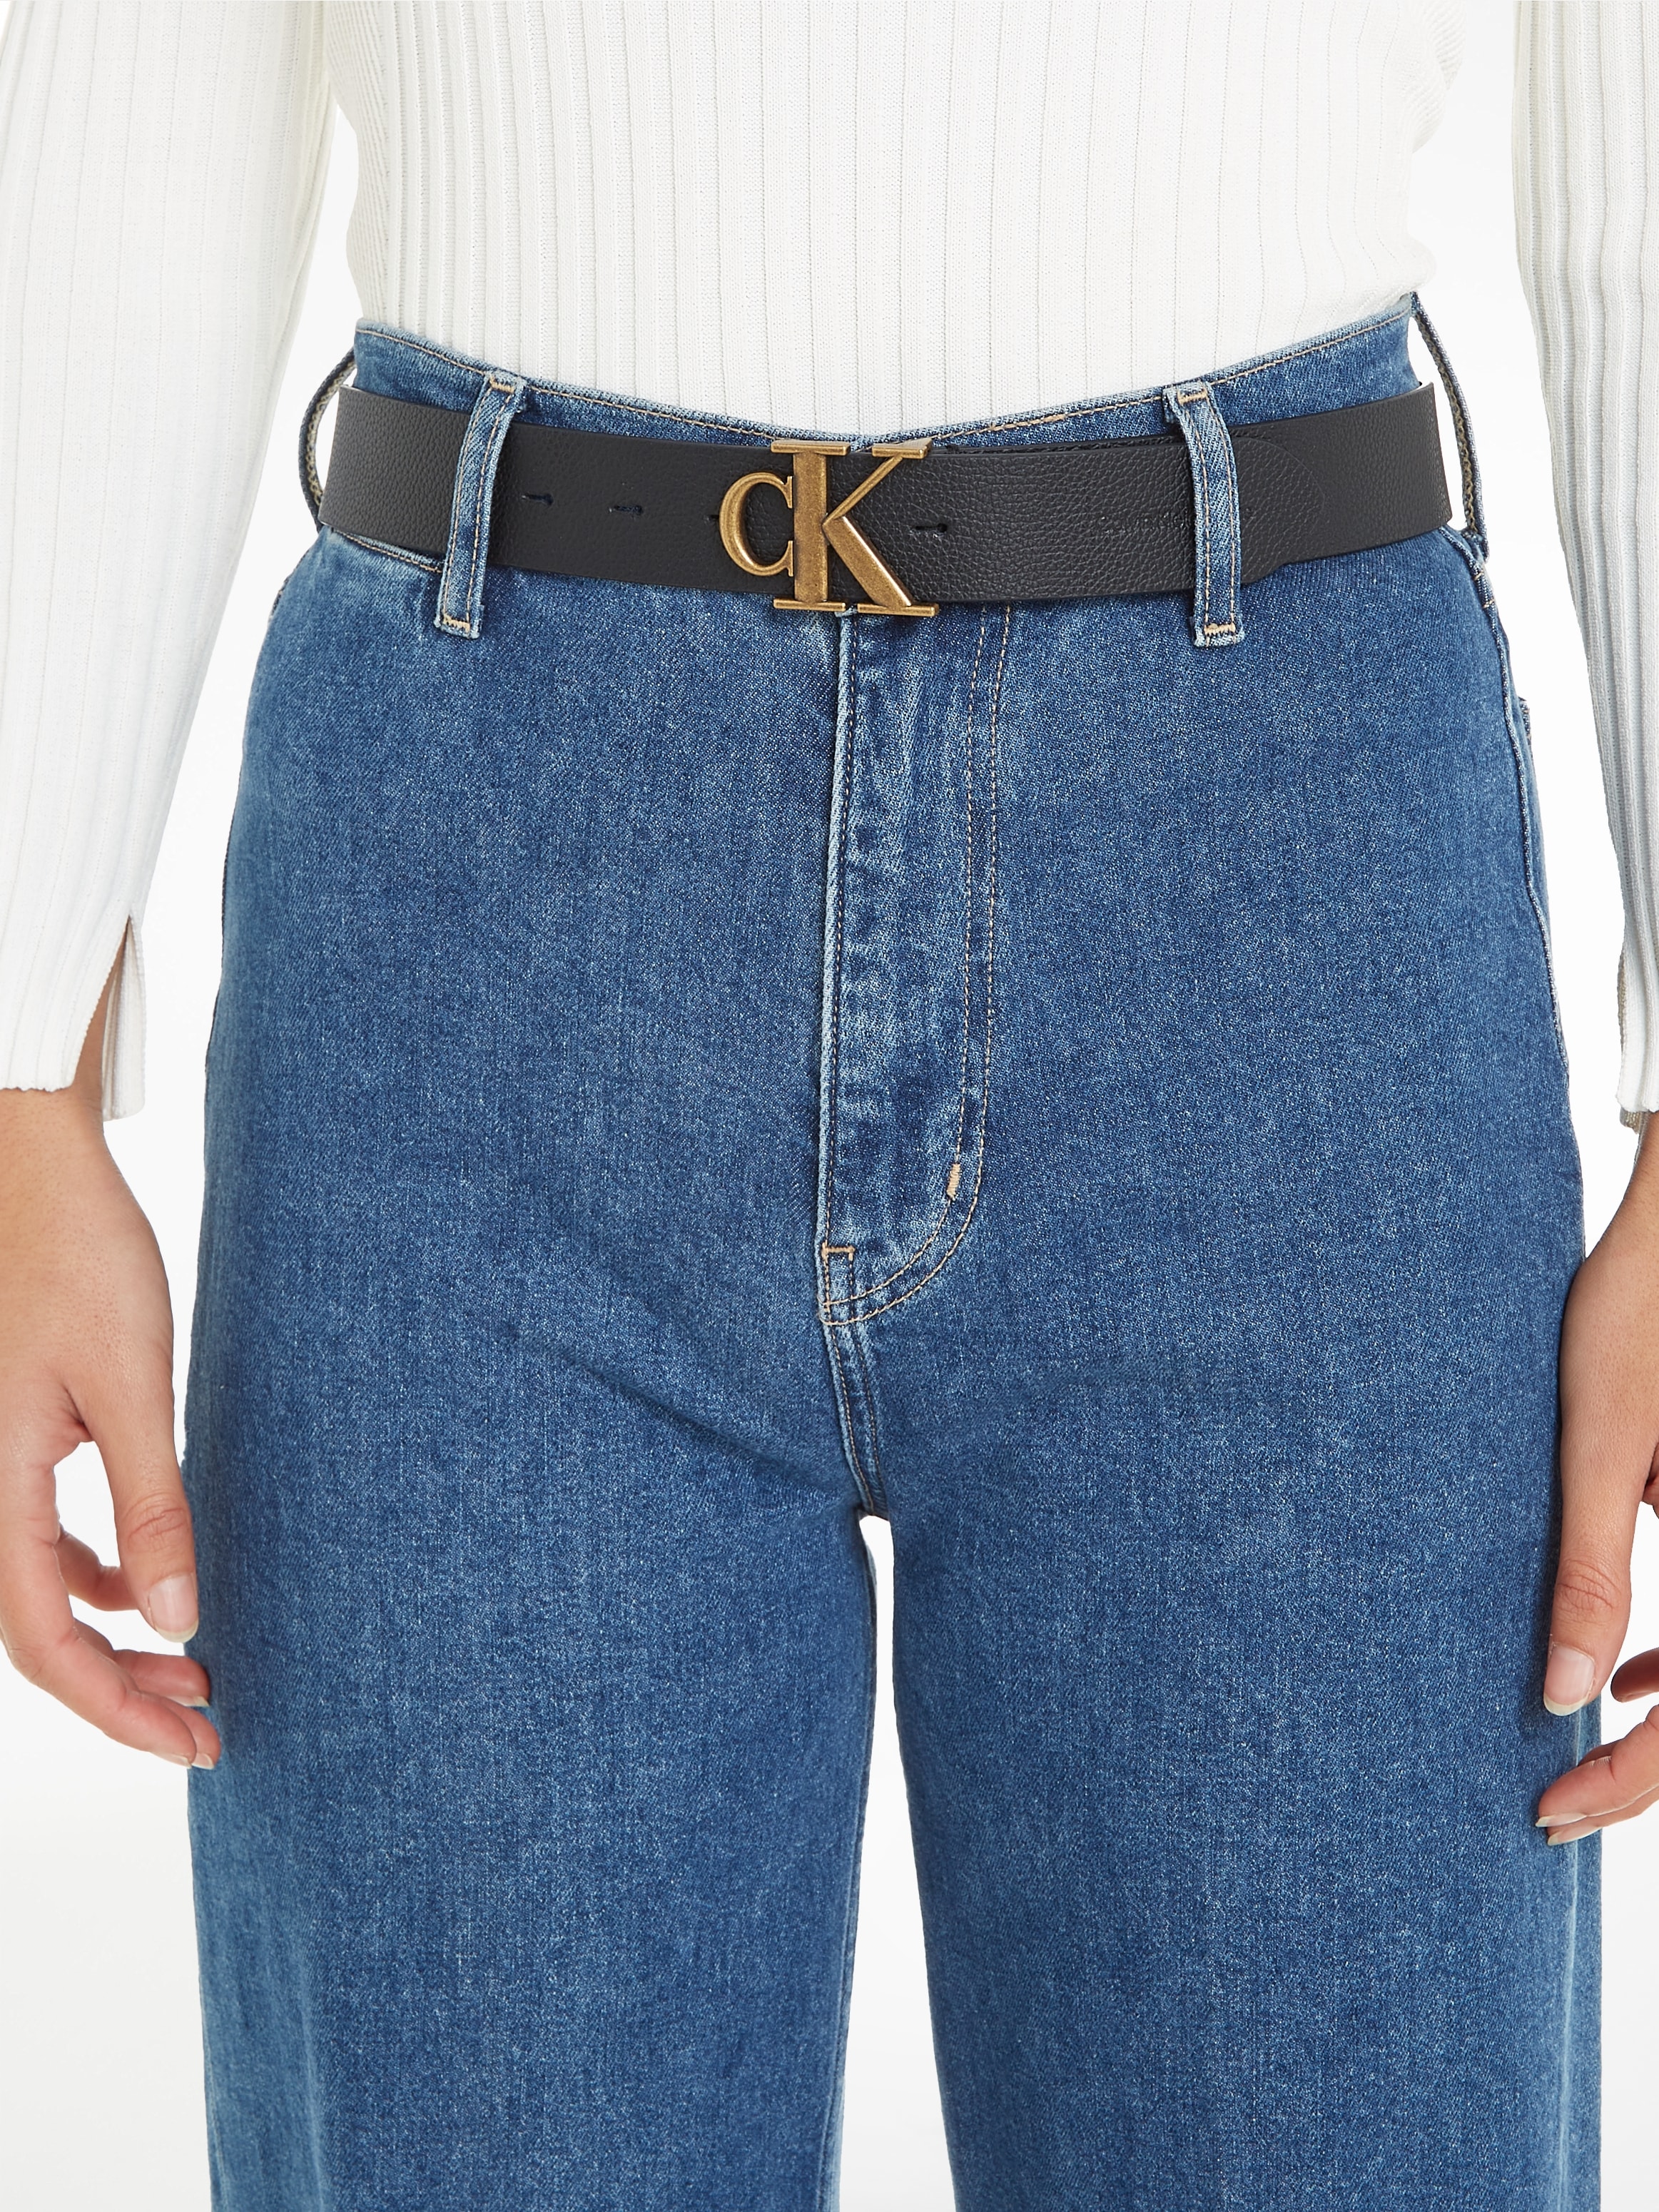 Calvin Klein | MONO 35MM« BELT BAUR Jeans kaufen »ROUND LTHR Ledergürtel